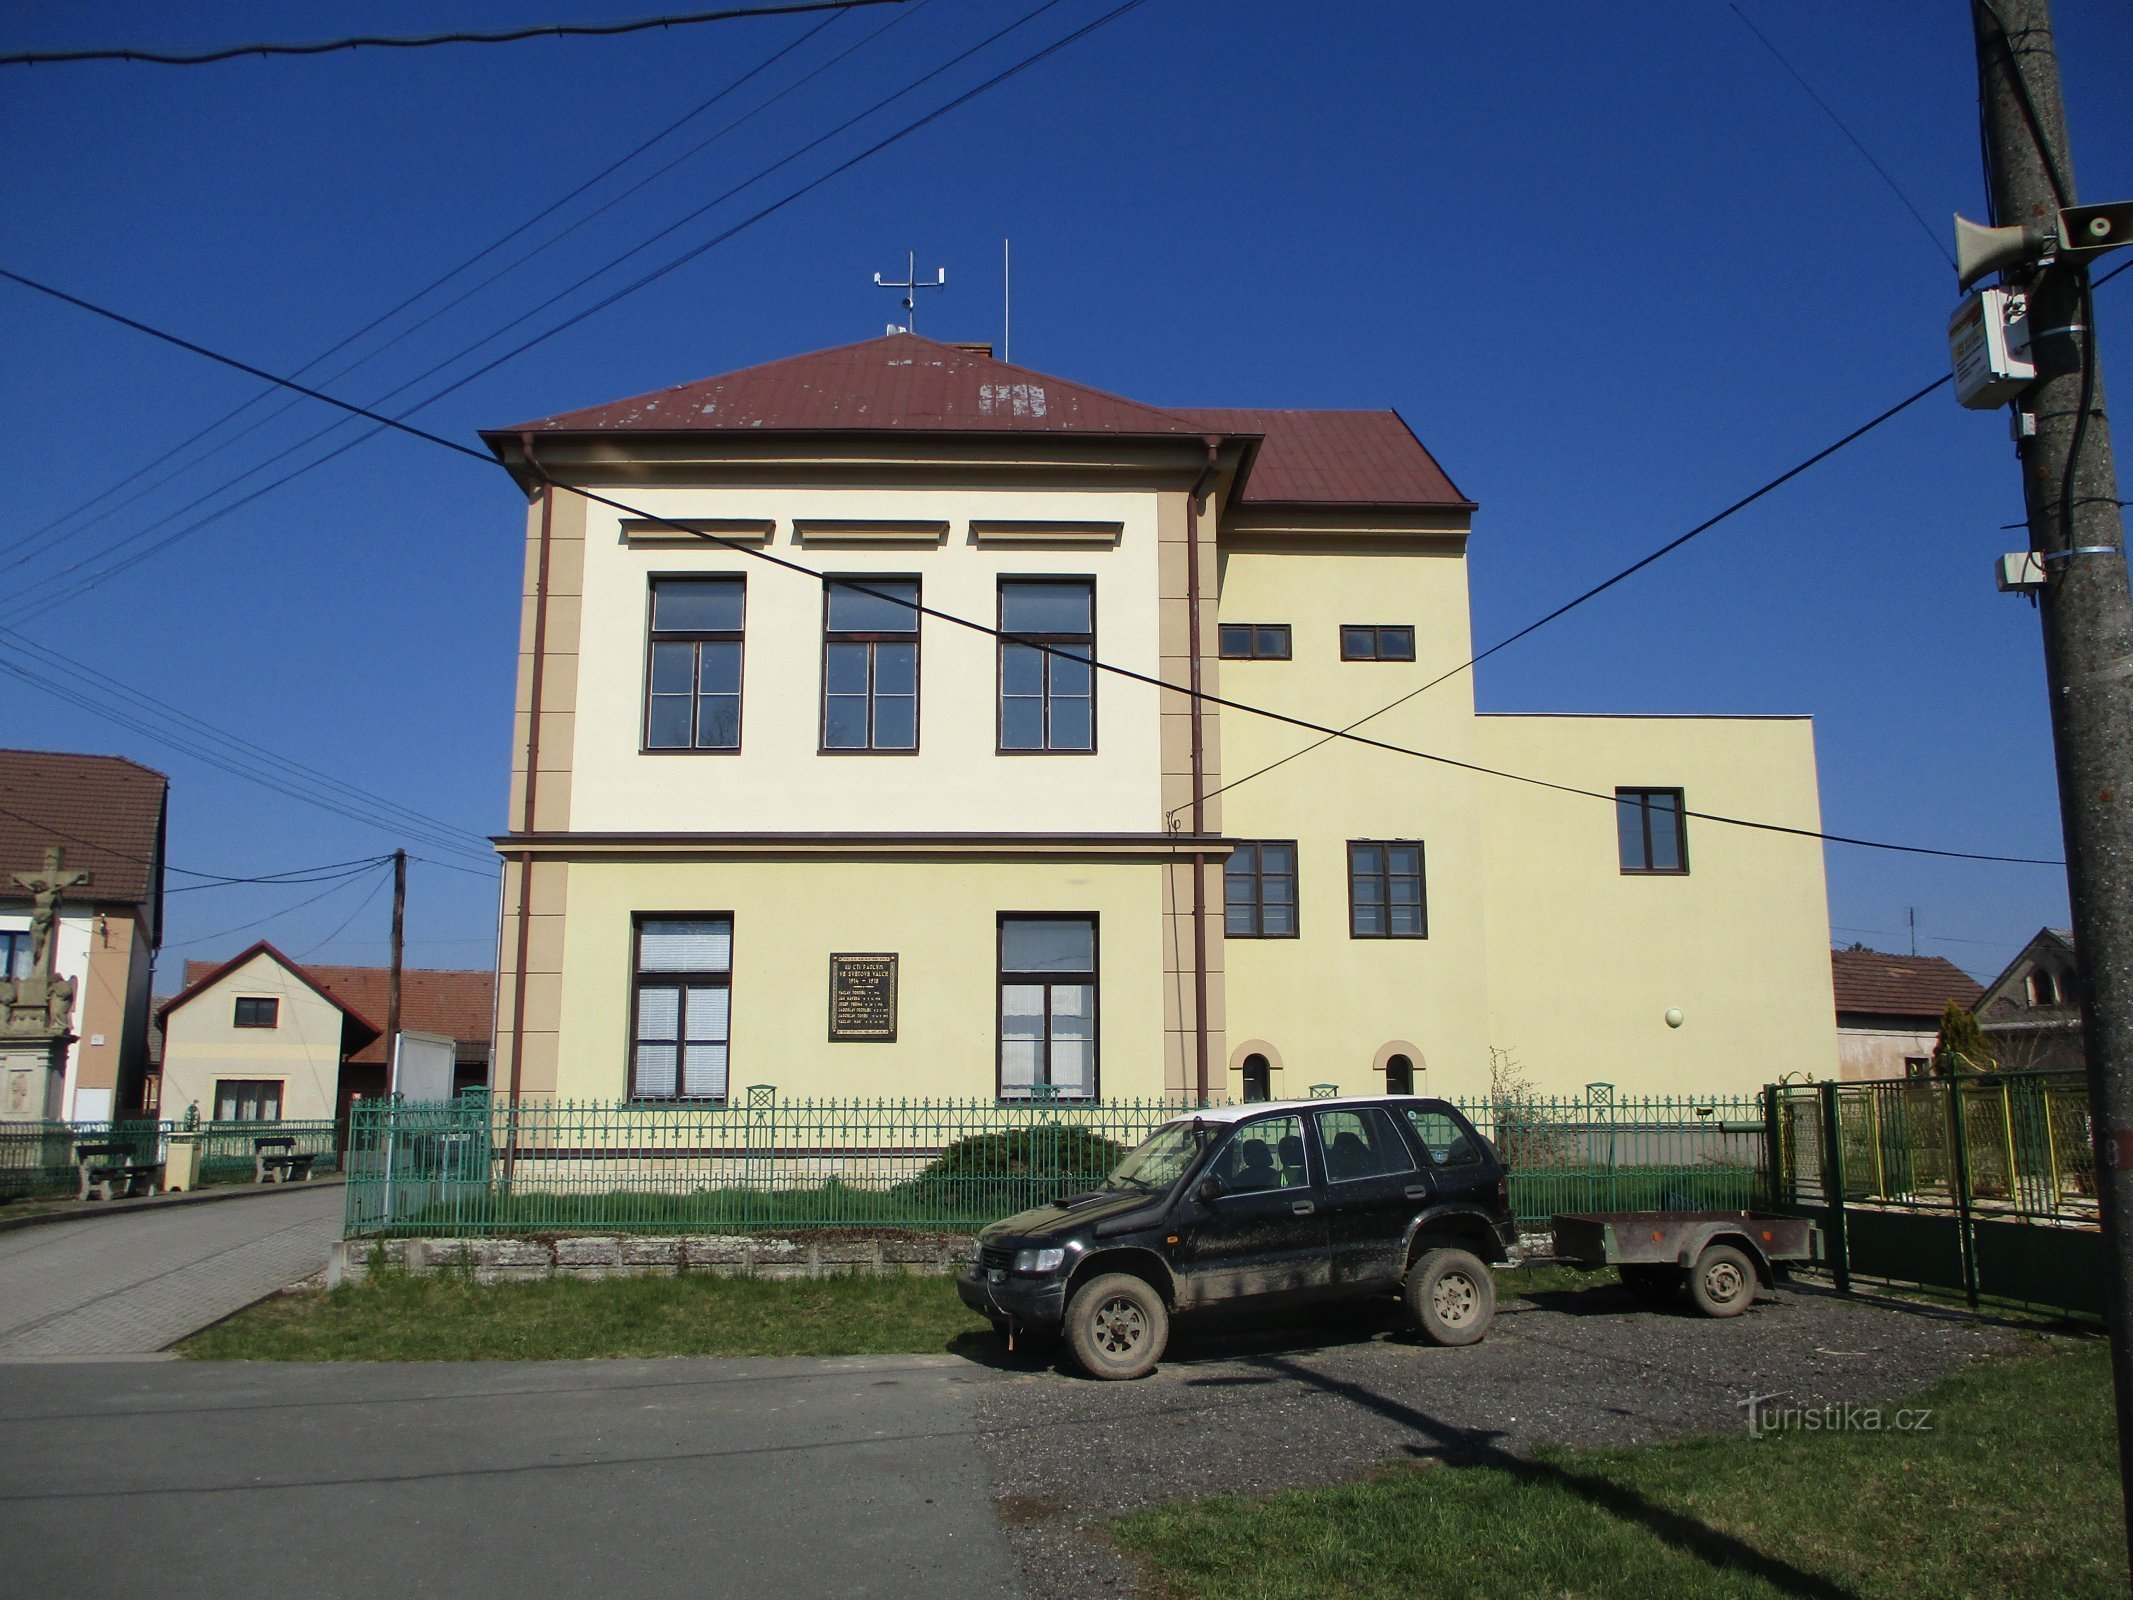 Школа с пристройкой (Рачице-над-Тротиной, 2.4.2020 апреля XNUMX г.)